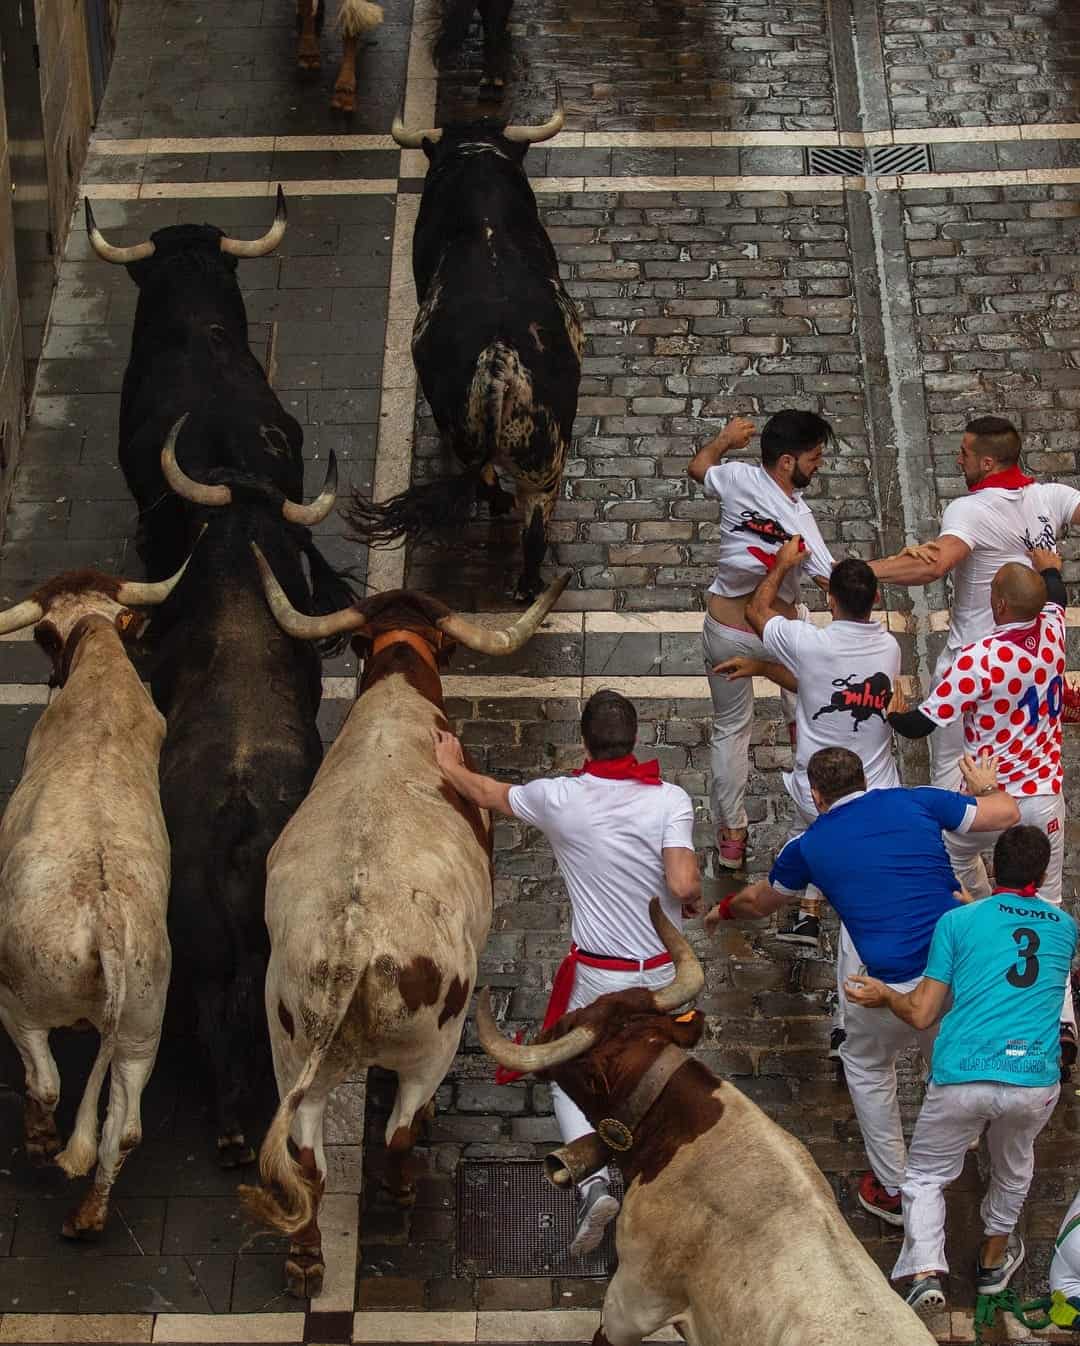 Spain Running of the Bulls festival 2018